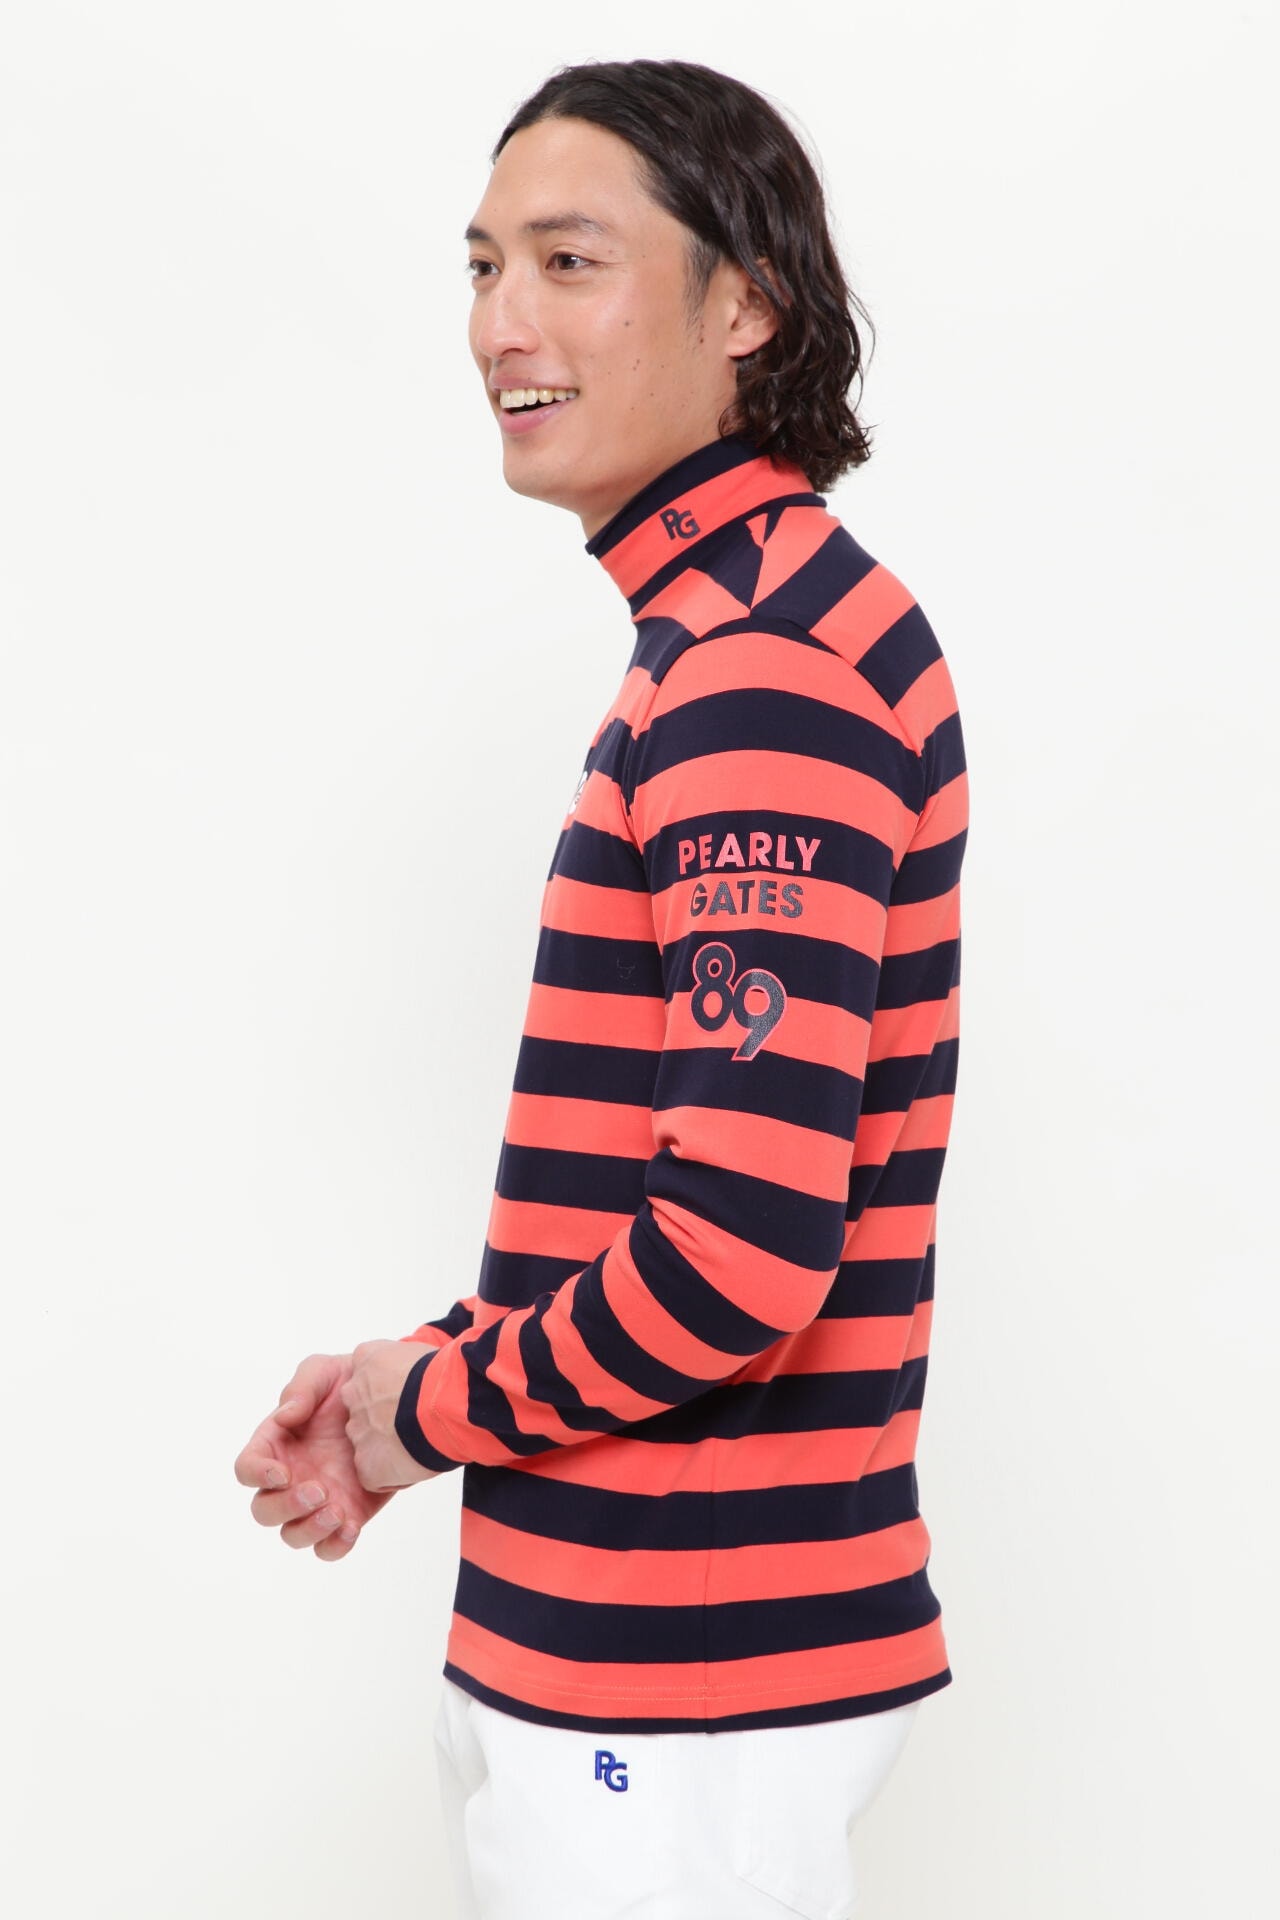 新品 パーリーゲイツ ボーダーハイネックシャツ M (4)赤×紺 日本製